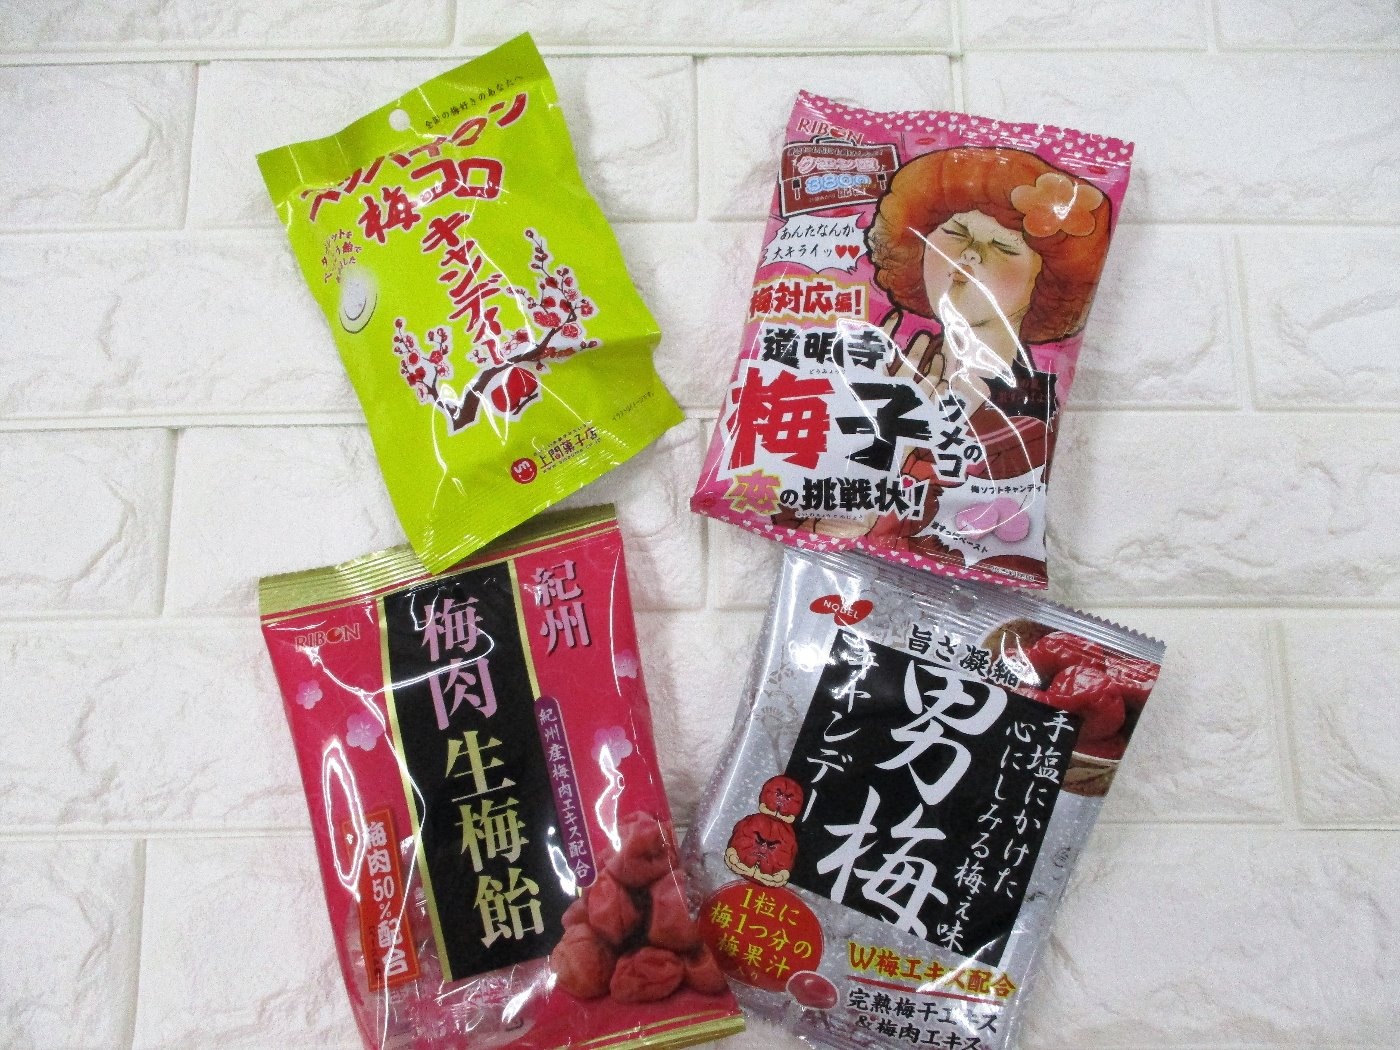 ひな祭りは 梅の節句 スタッフブログ ダイソーシマダヤ土佐店 家具の島田屋 Shimadaya Home Life